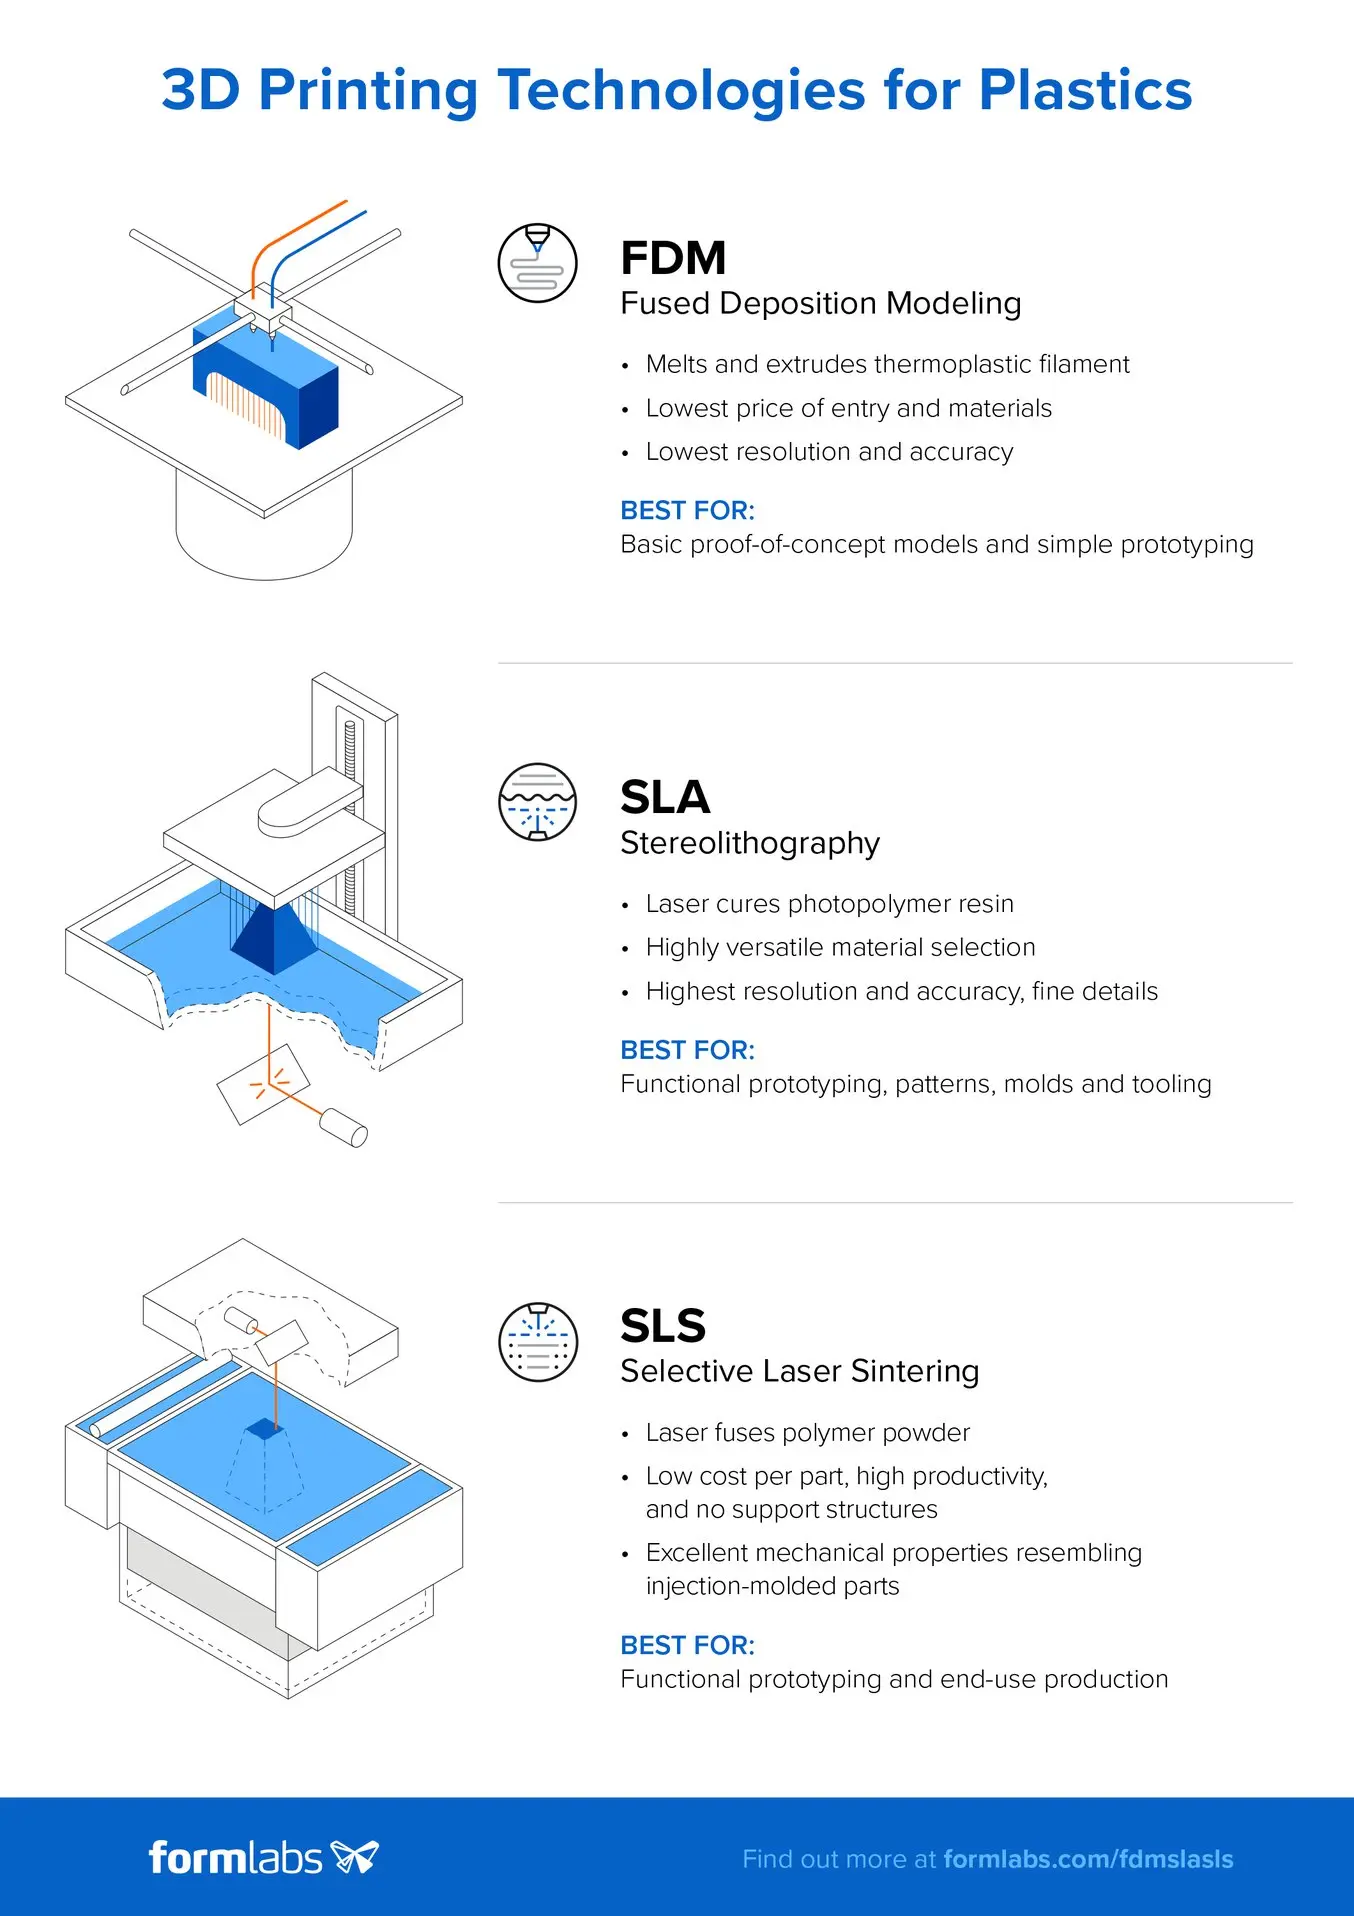 Comparación entre FDM, SLA y SLS - Tecnologías de impresión 3D para plásticos - Infografía